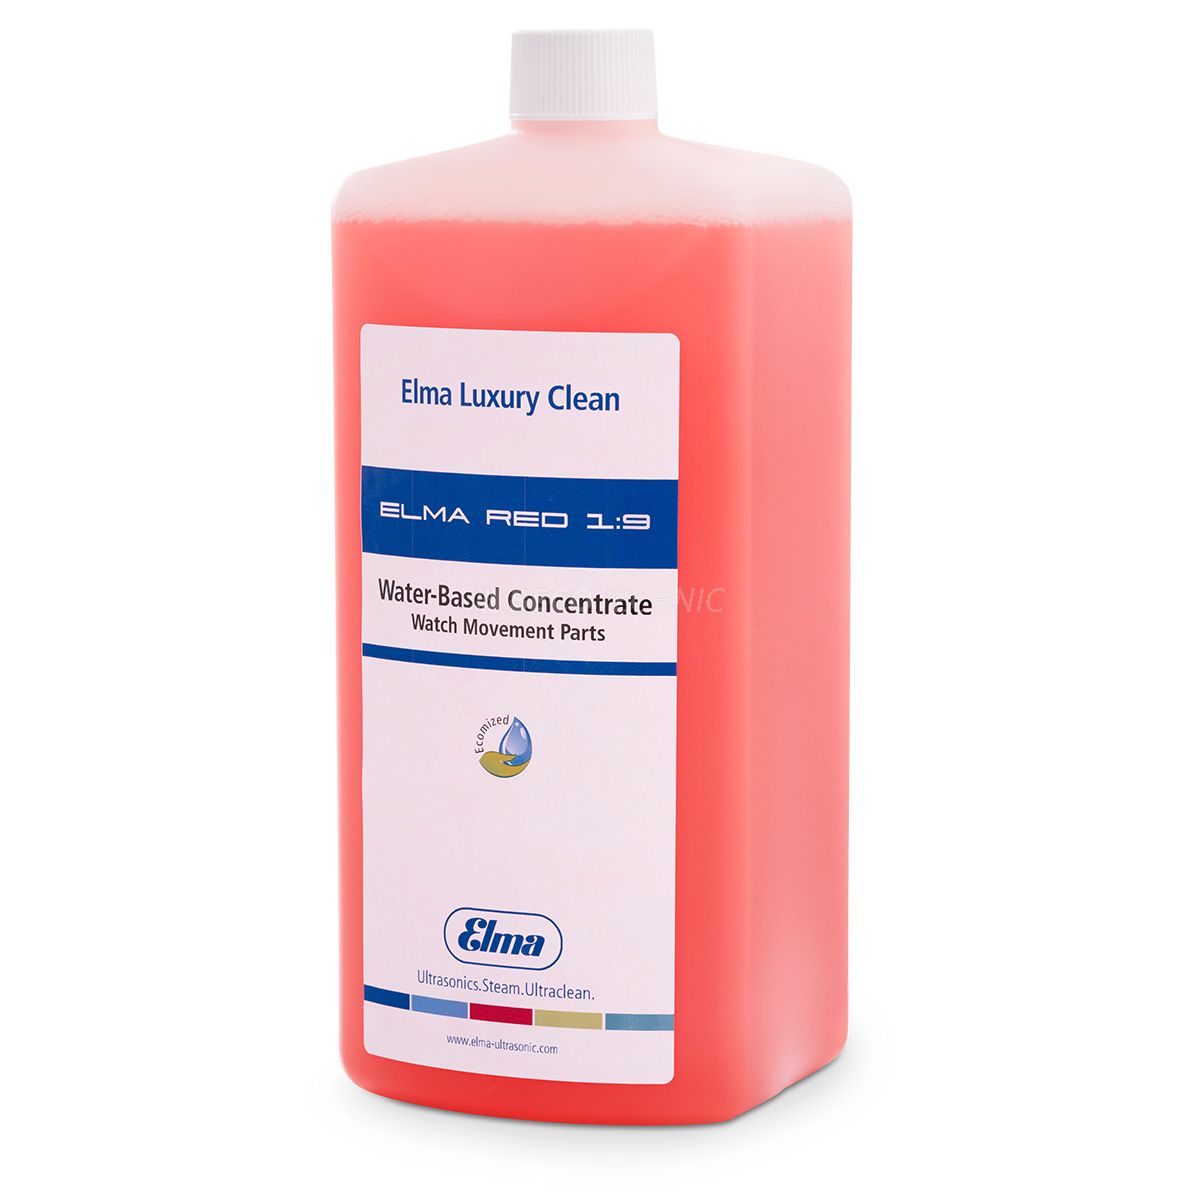 Elma Luxury Clean Red 1:9 reinigingsconcentraat, 500 ml